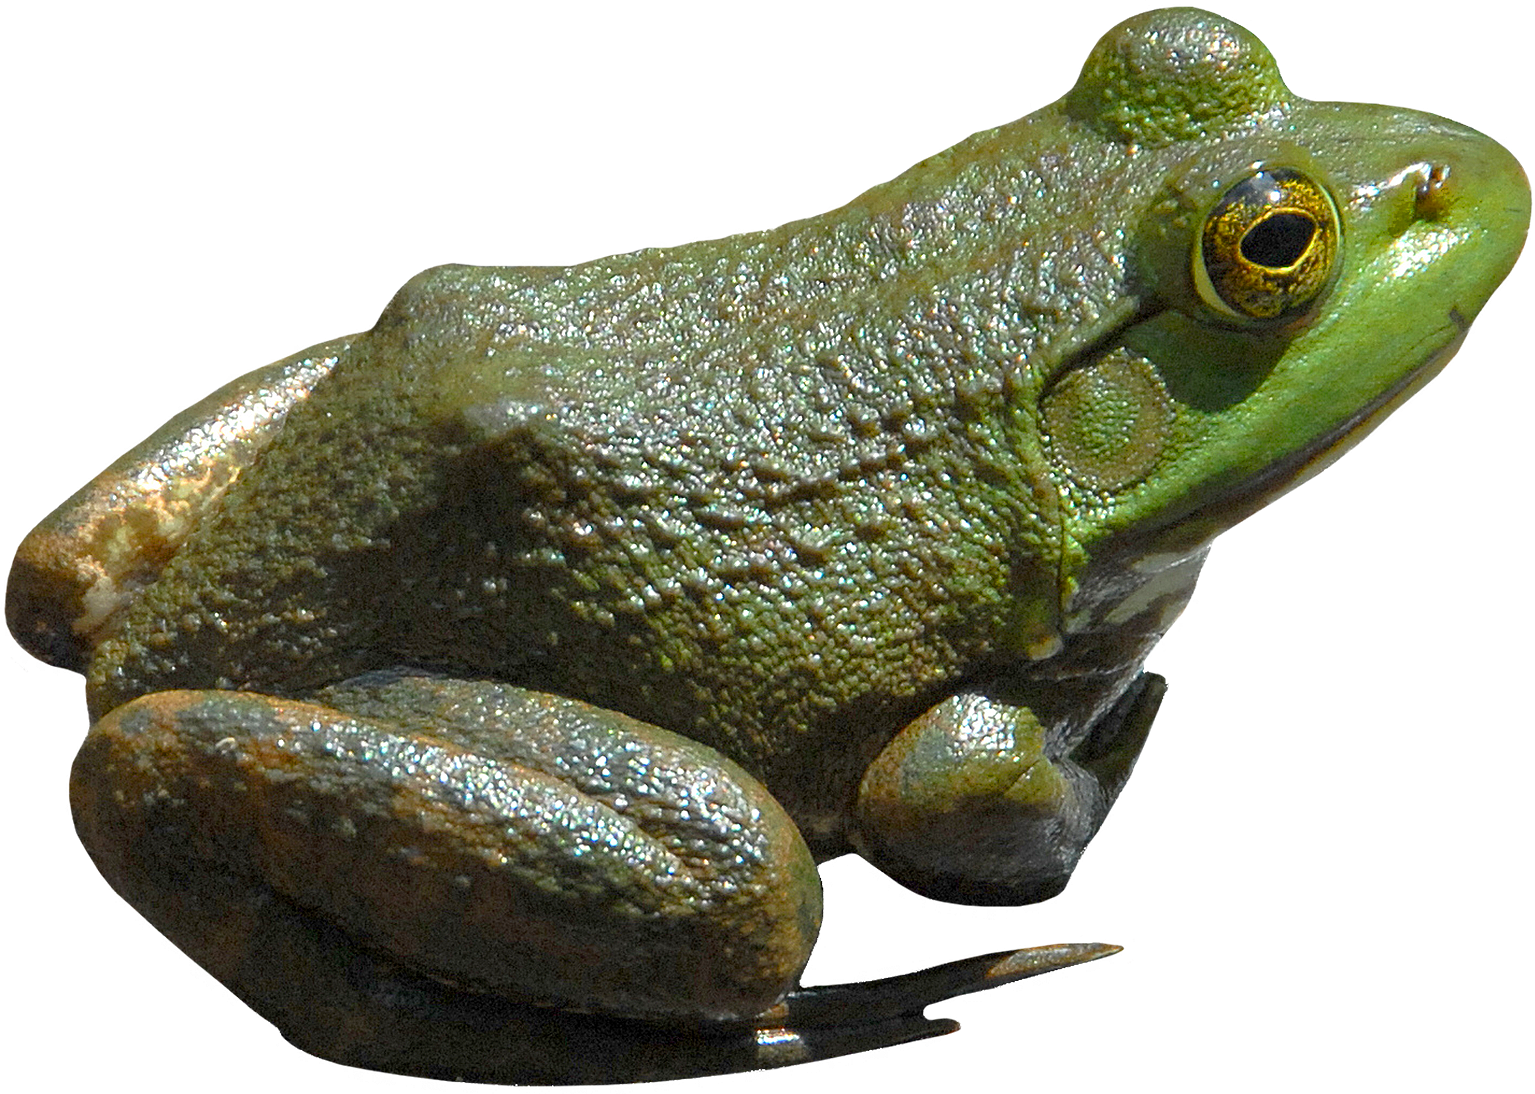 Yeşil kurbağa